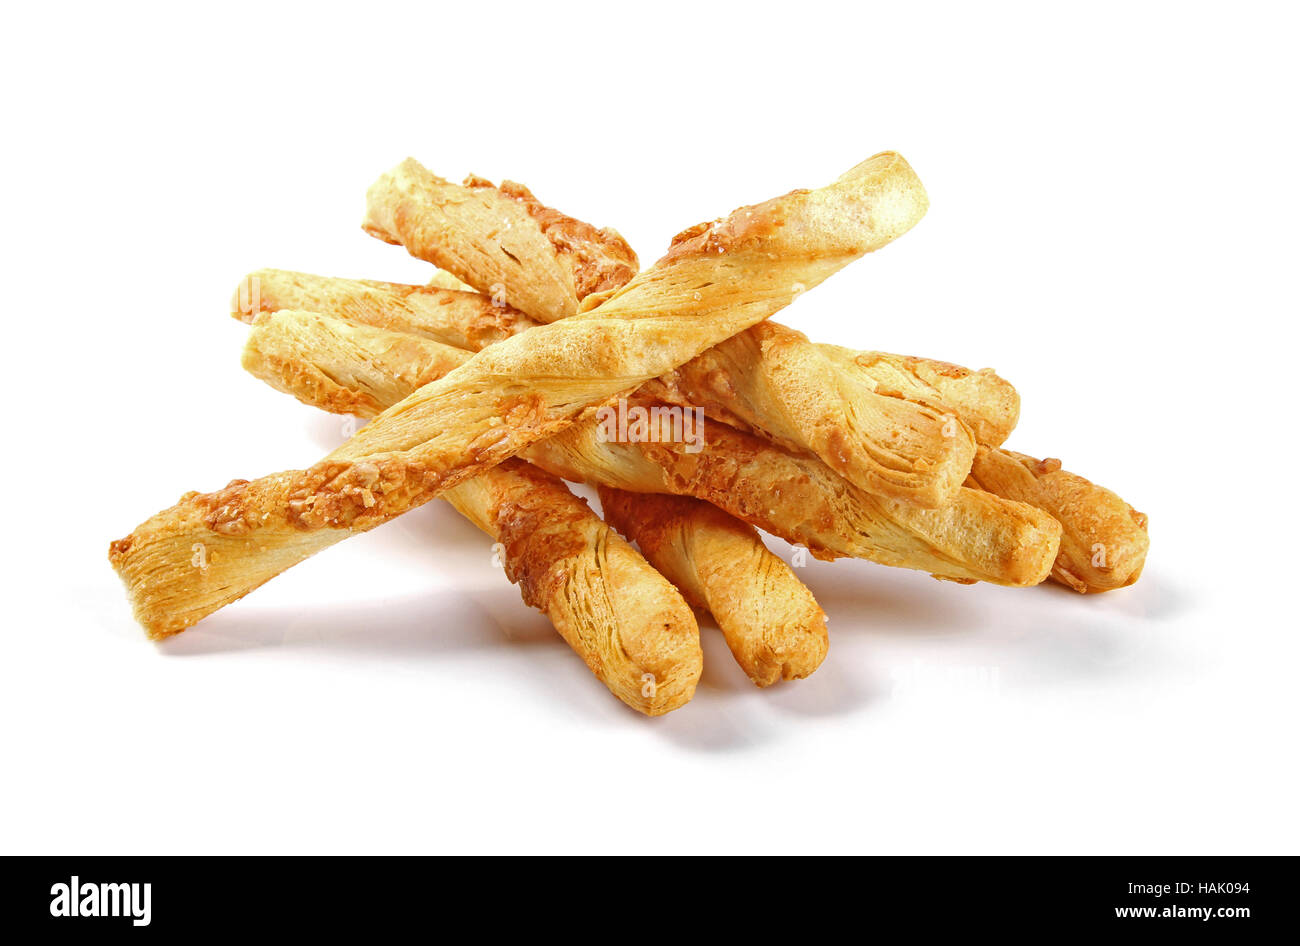 Formaggio salato snack stick isolato su bianco Foto Stock